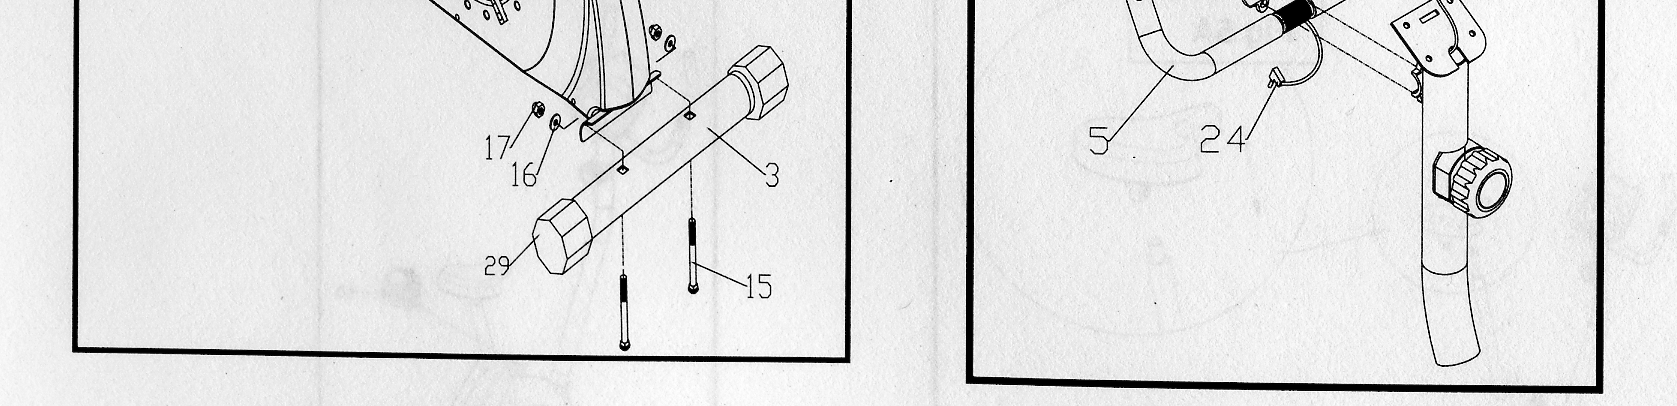 4. Montaż konsoli wyświetlacza: Odkręć śruby znajdujące się z tyłu wyświetlacza.